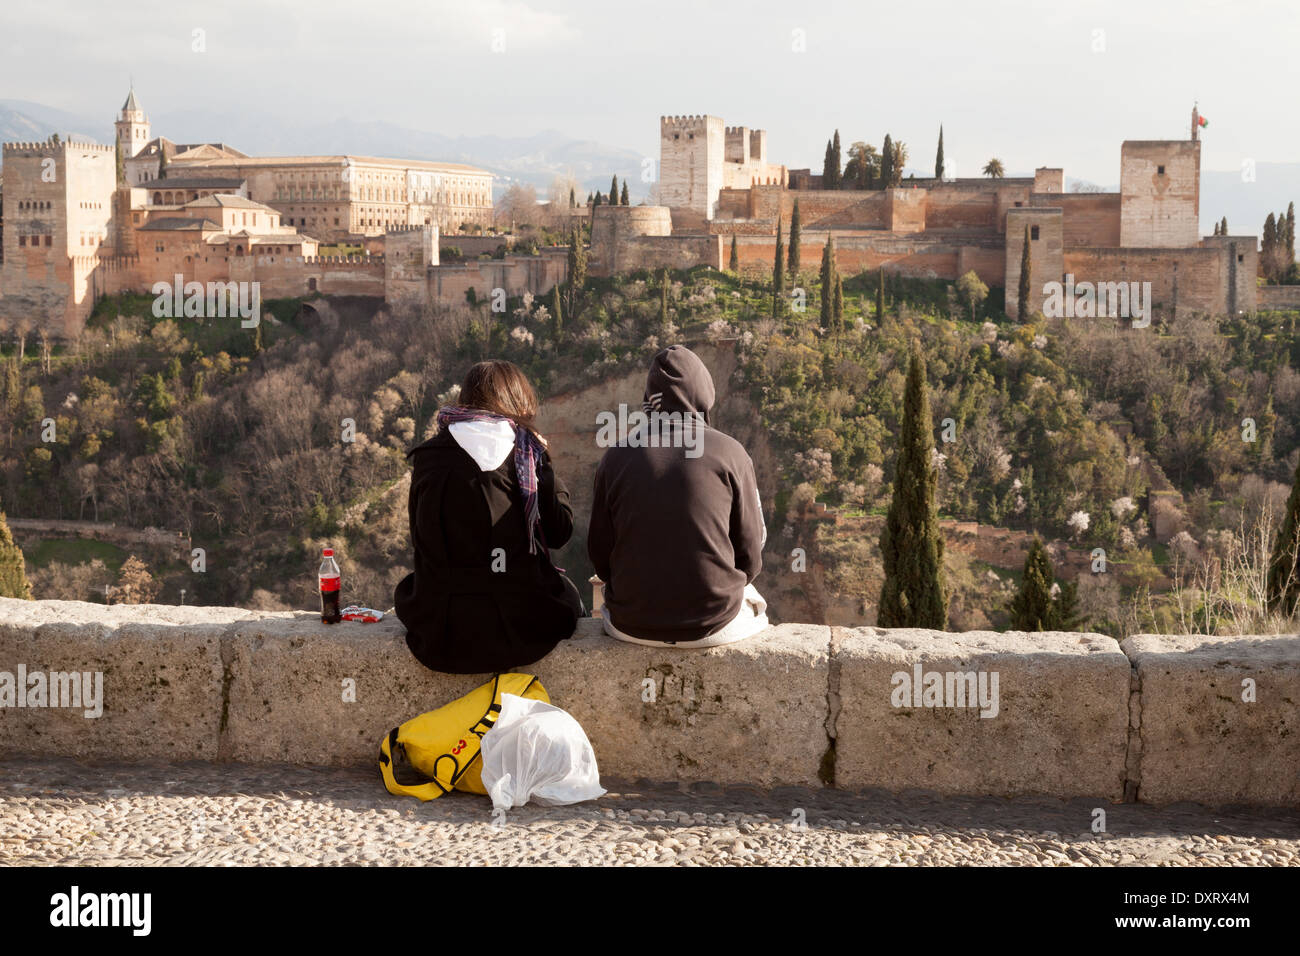 Un couple de personnes assises sur la place de St Nicholas à l'ensemble de l'Alhambra, Grenade, Andalousie Espagne Europe Banque D'Images